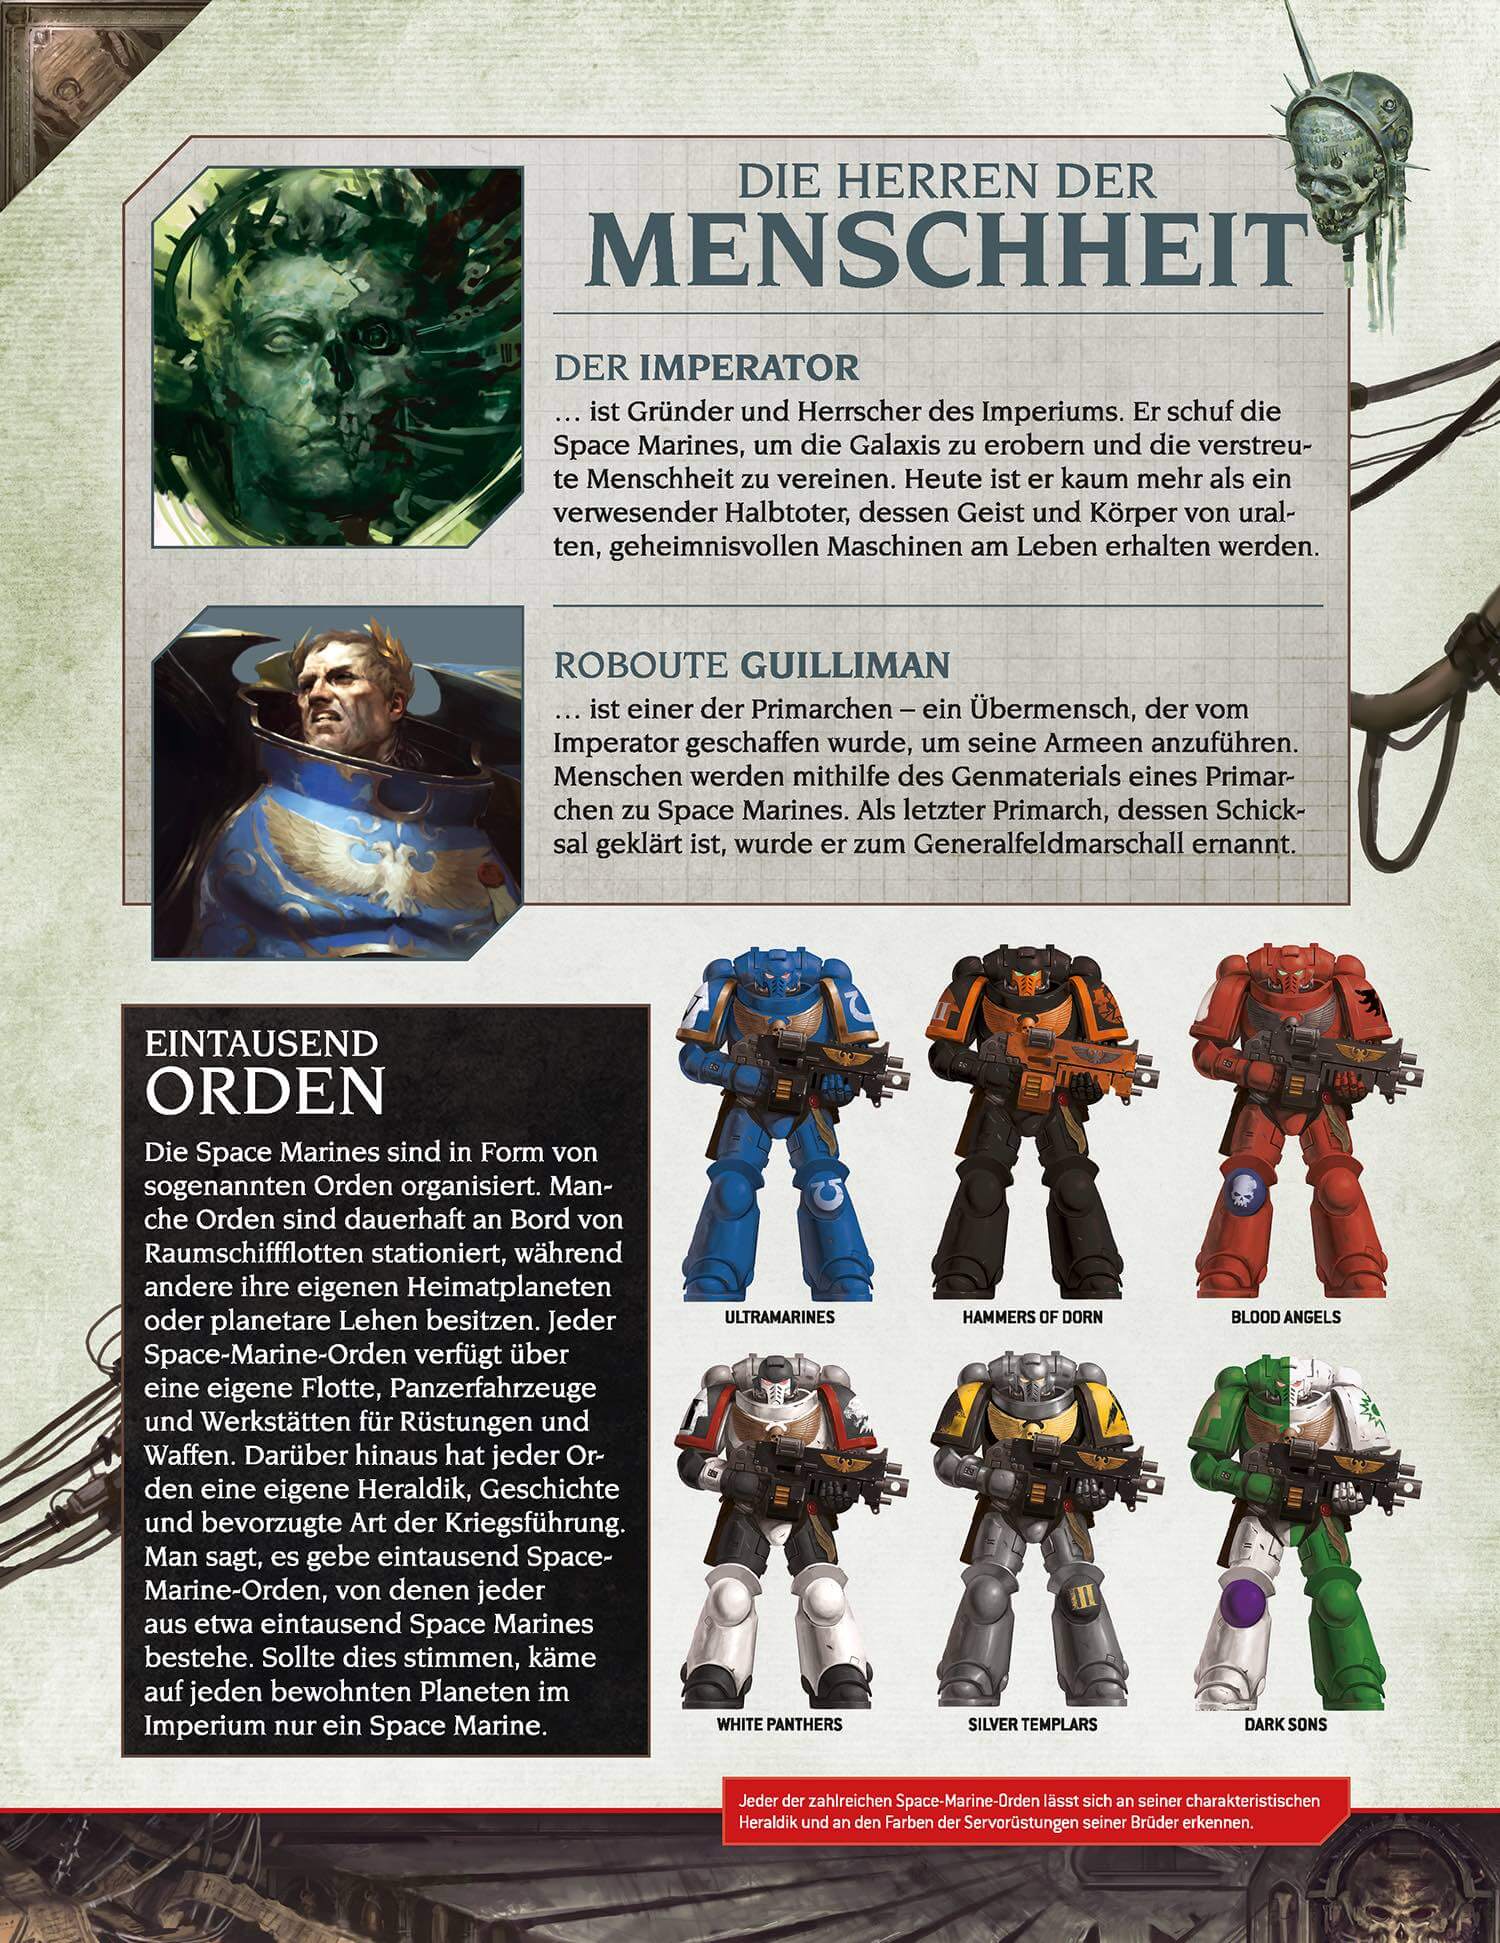 Offizielle Warhammer 40k Sammlung Hachette Ausg 31 Farbe Guillimans Herkunft 